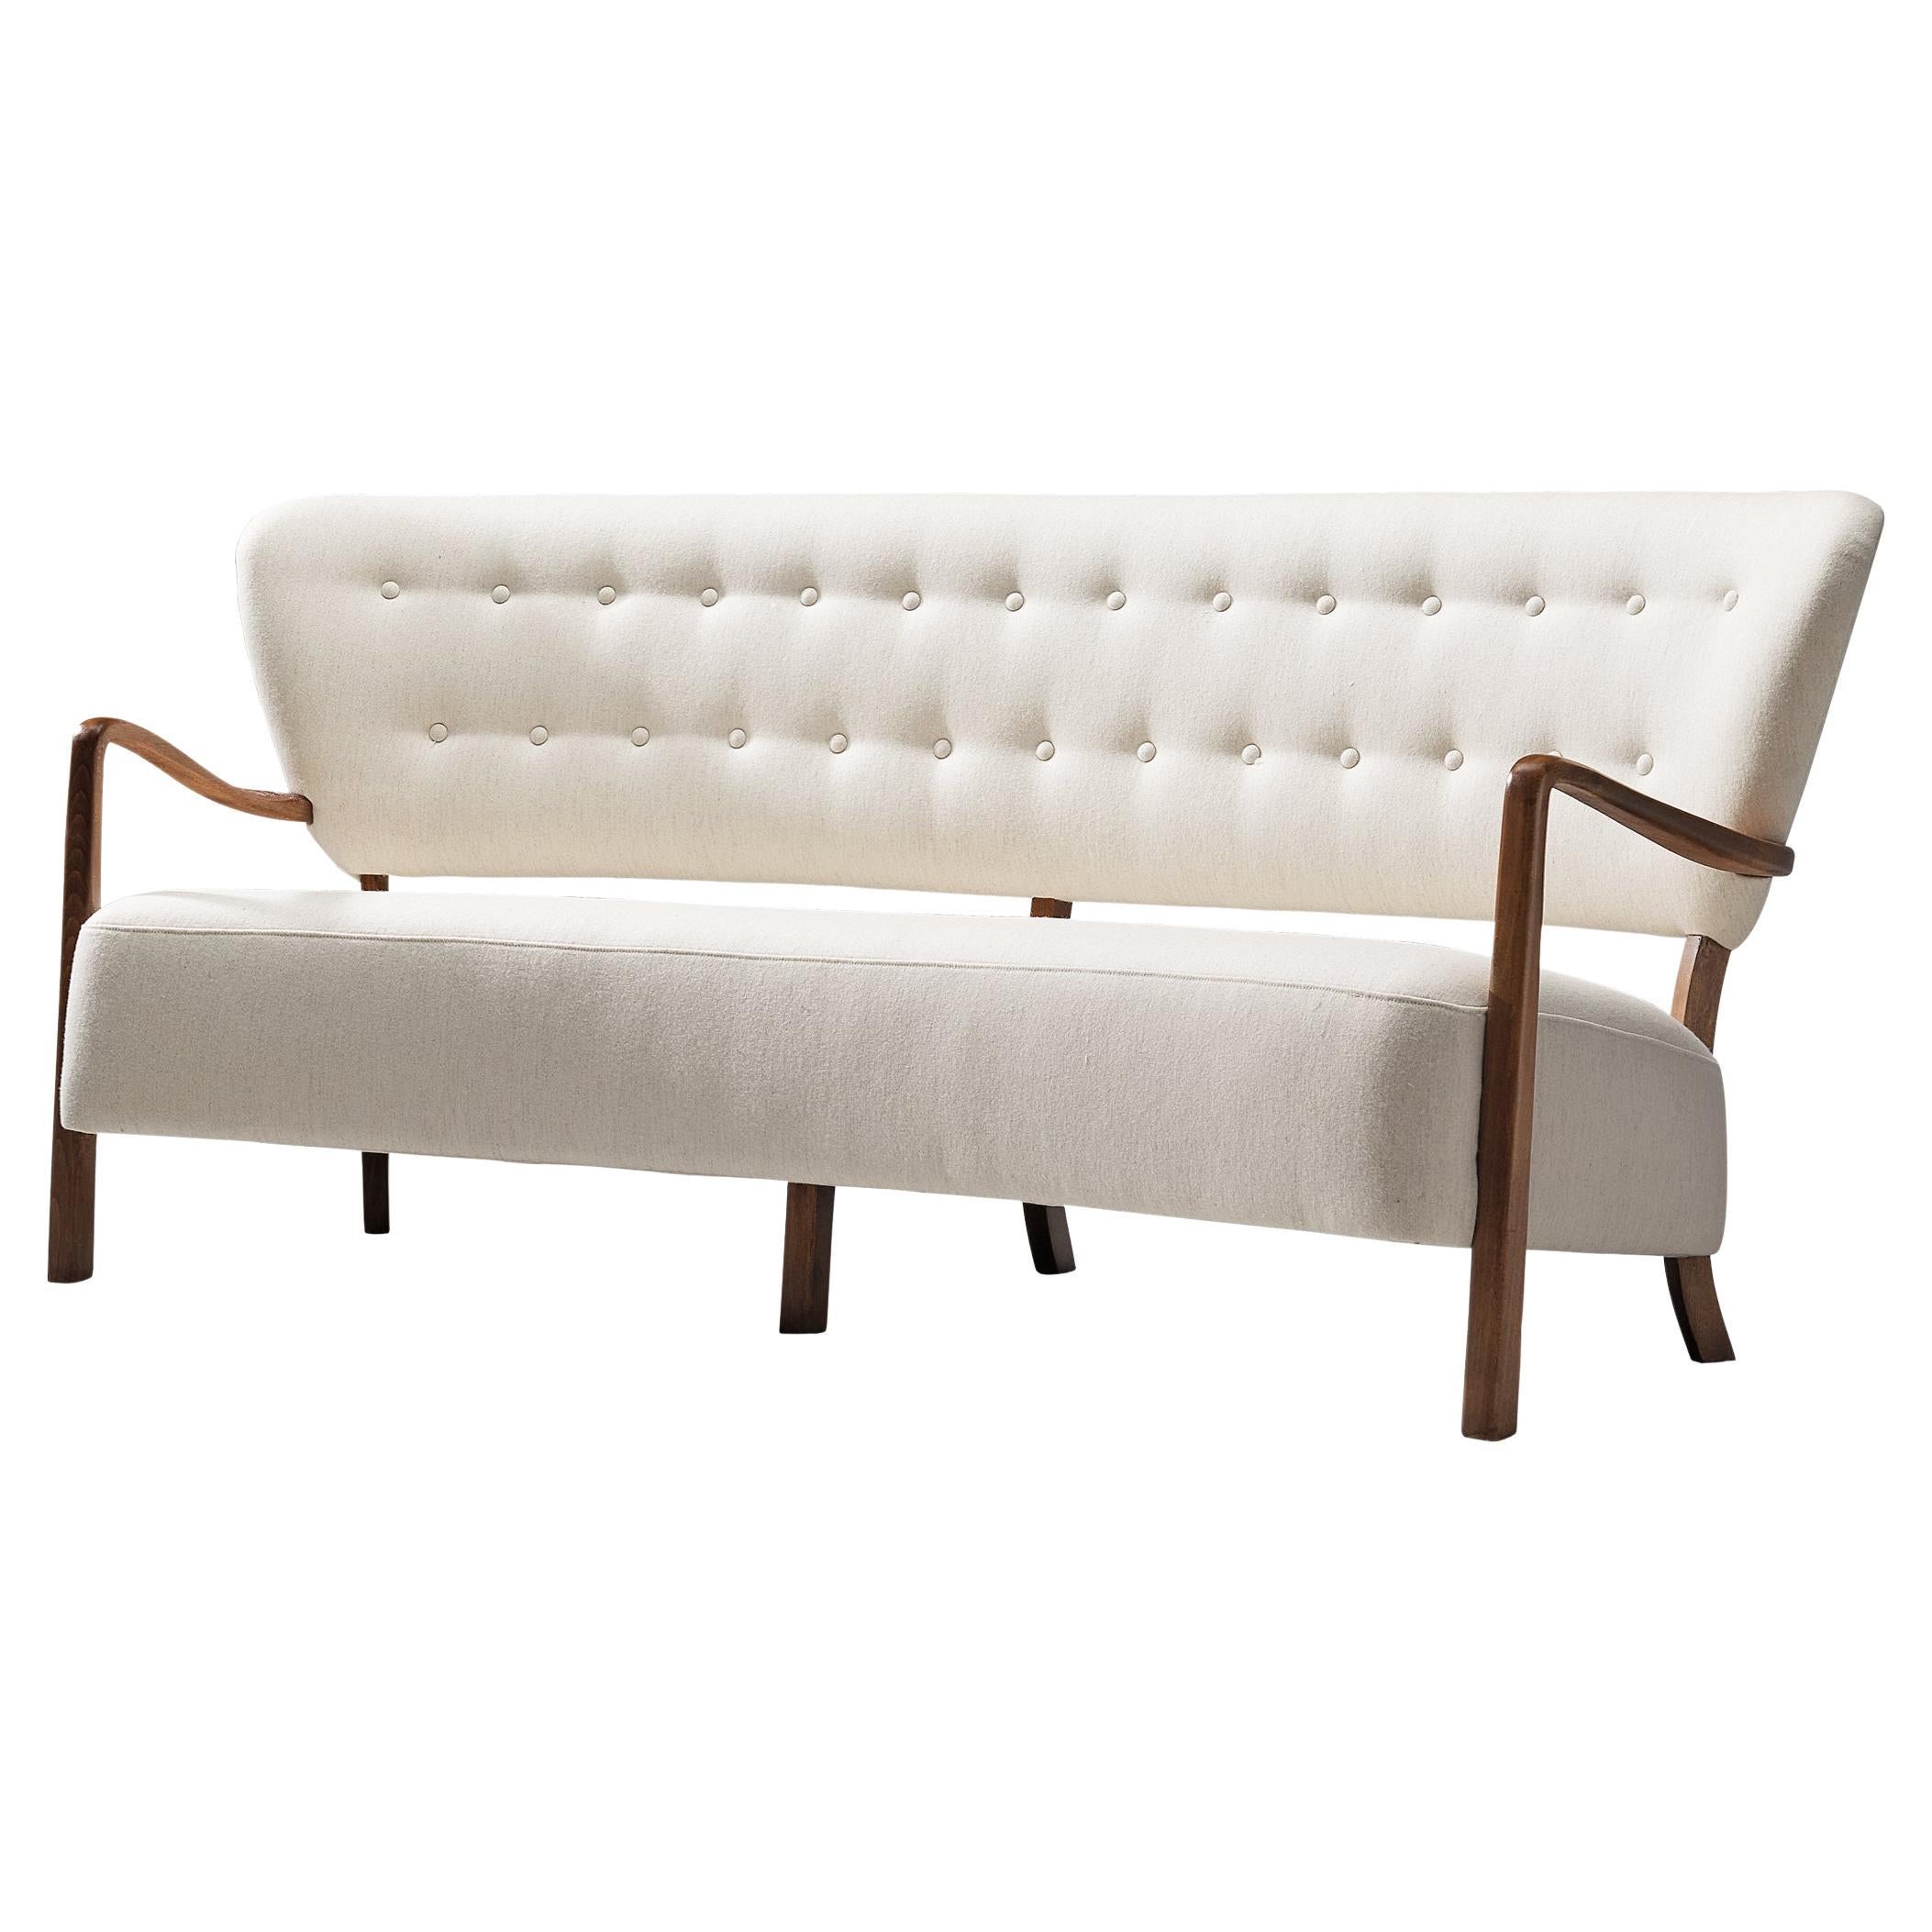 Neu gepolstertes dänisches Sofa mit skulpturalem Rahmen und weißer Polsterung